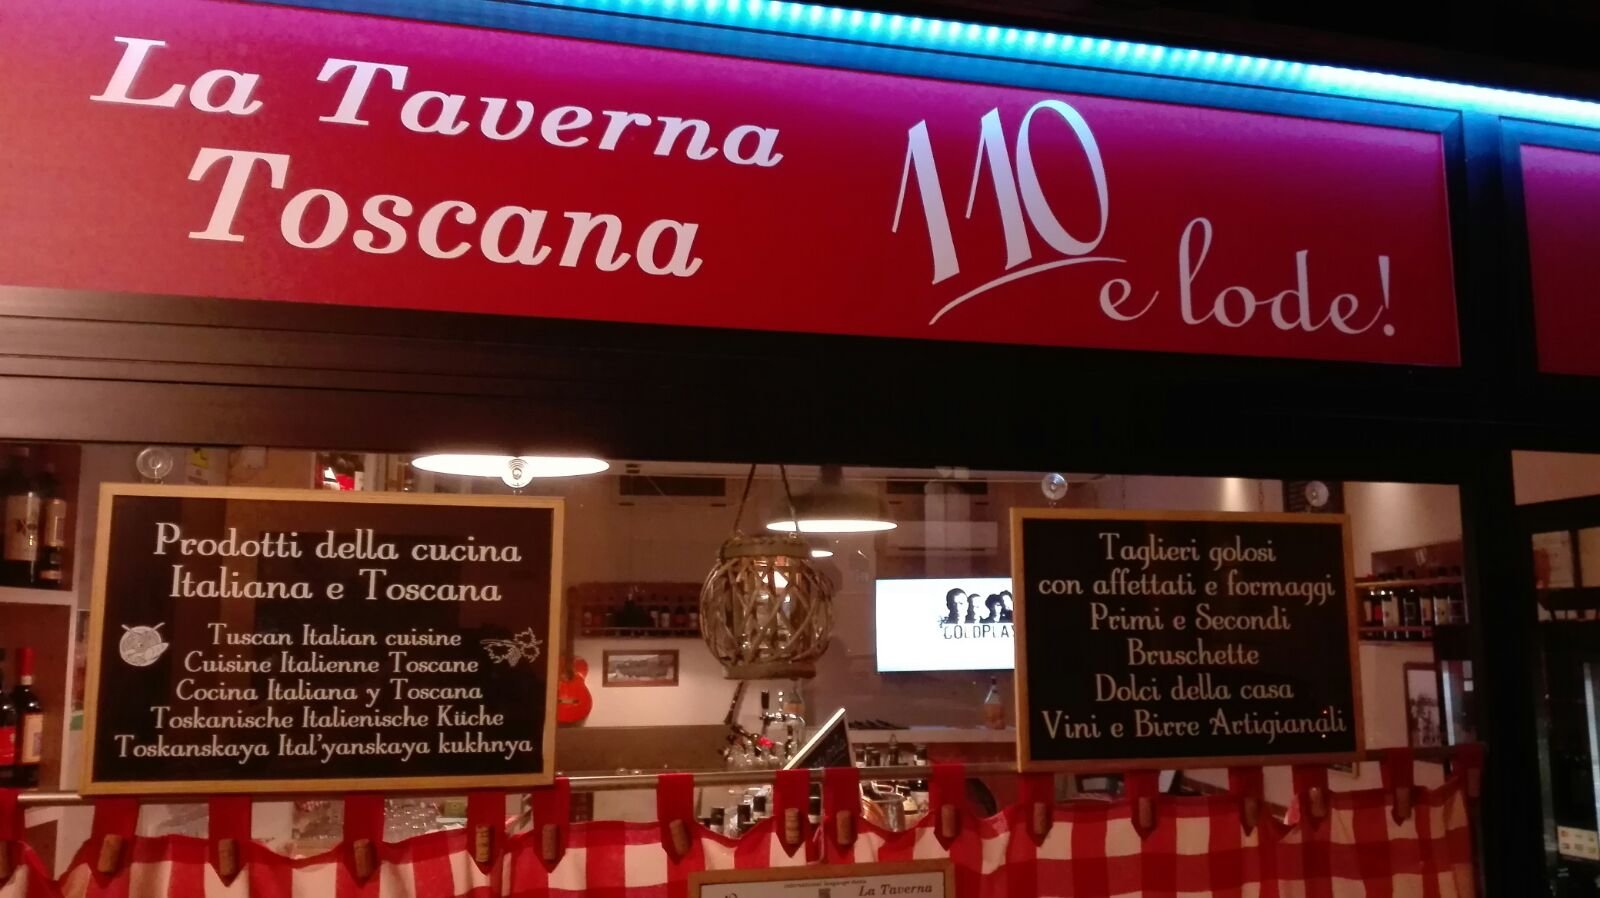 110 E Lode! La Taverna Toscana, Bologna